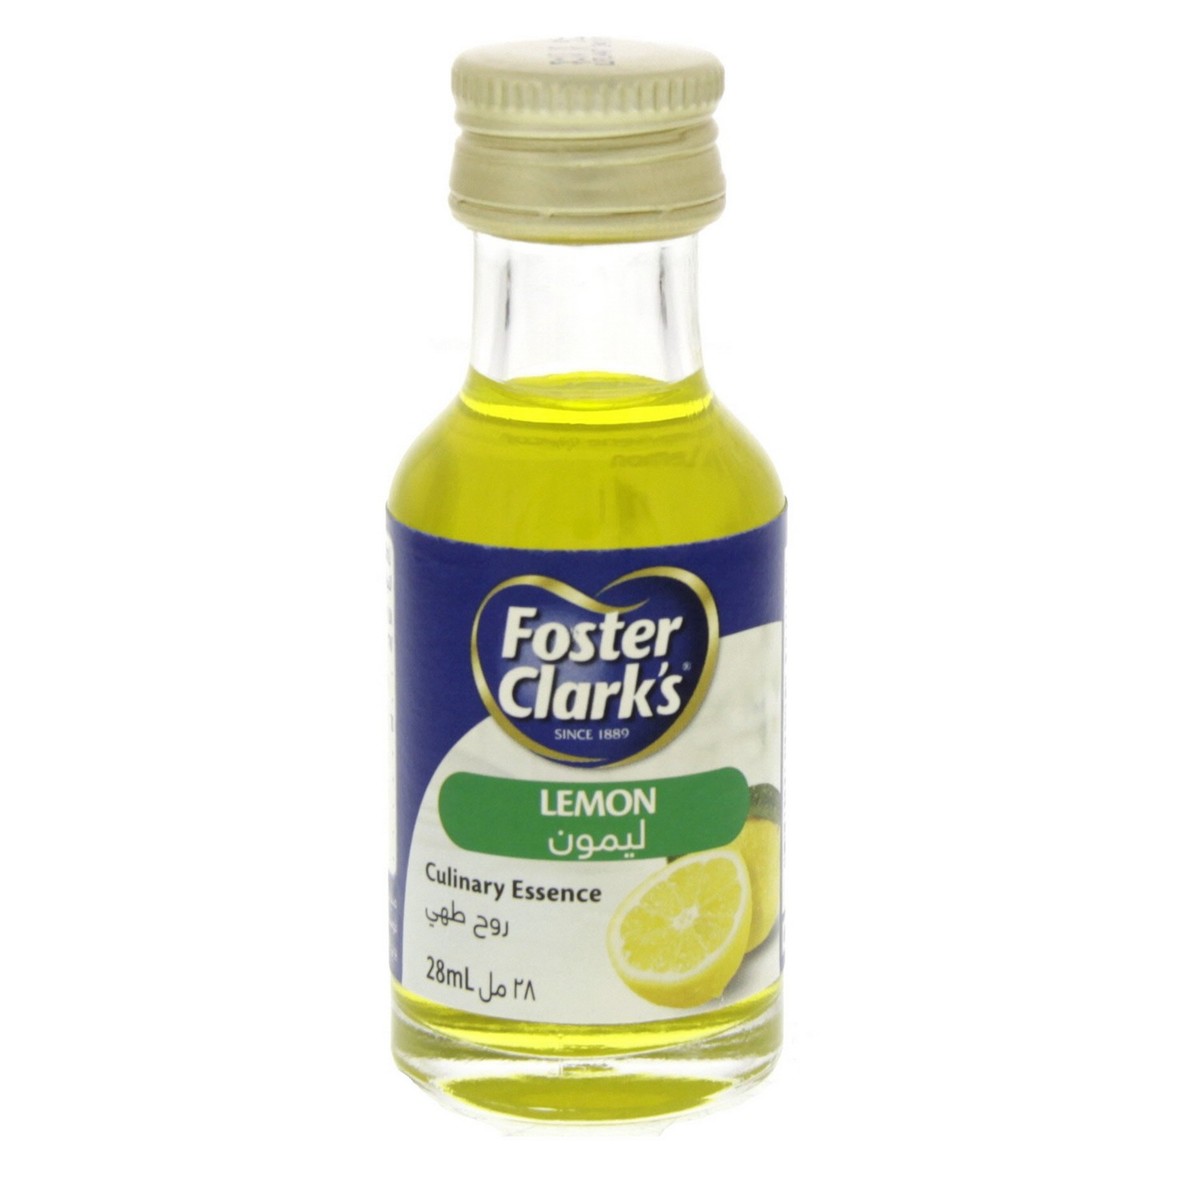 ফস্টার ক্লার্কস লেমন এসেন্স (Foster Clarks lemon essence)